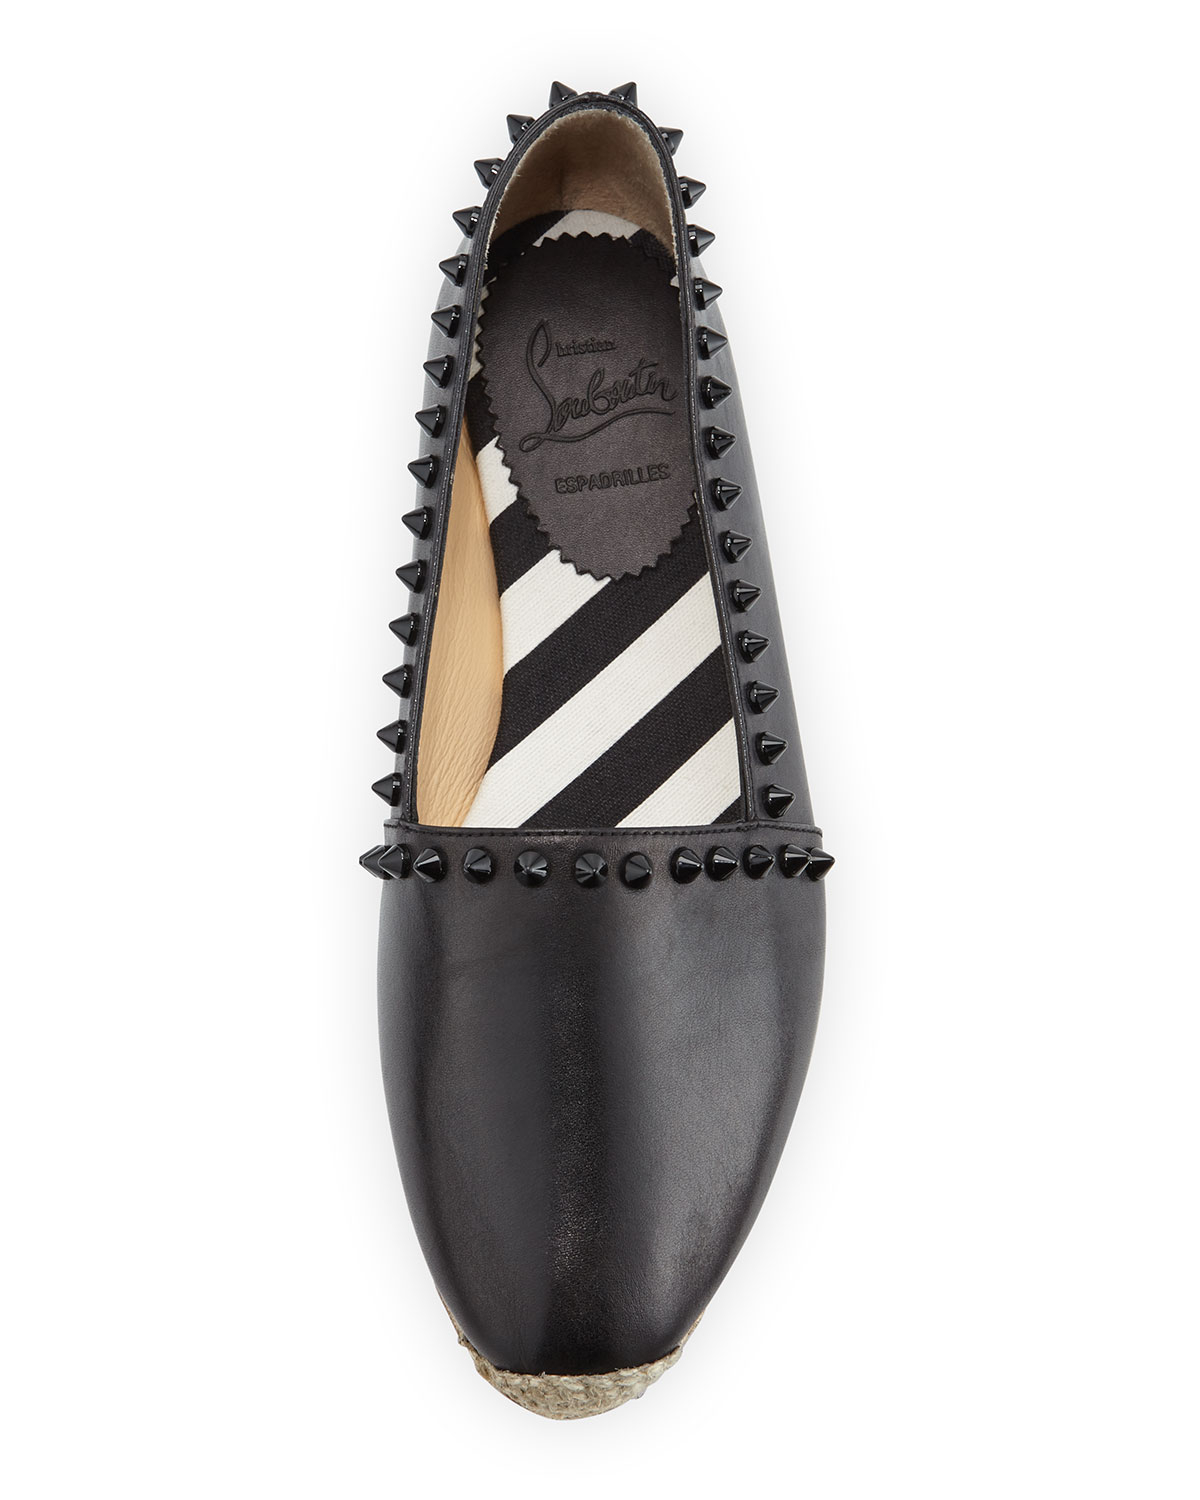 vuitton mens shoes - christian louboutin espadrille flats Black leather bow details ...